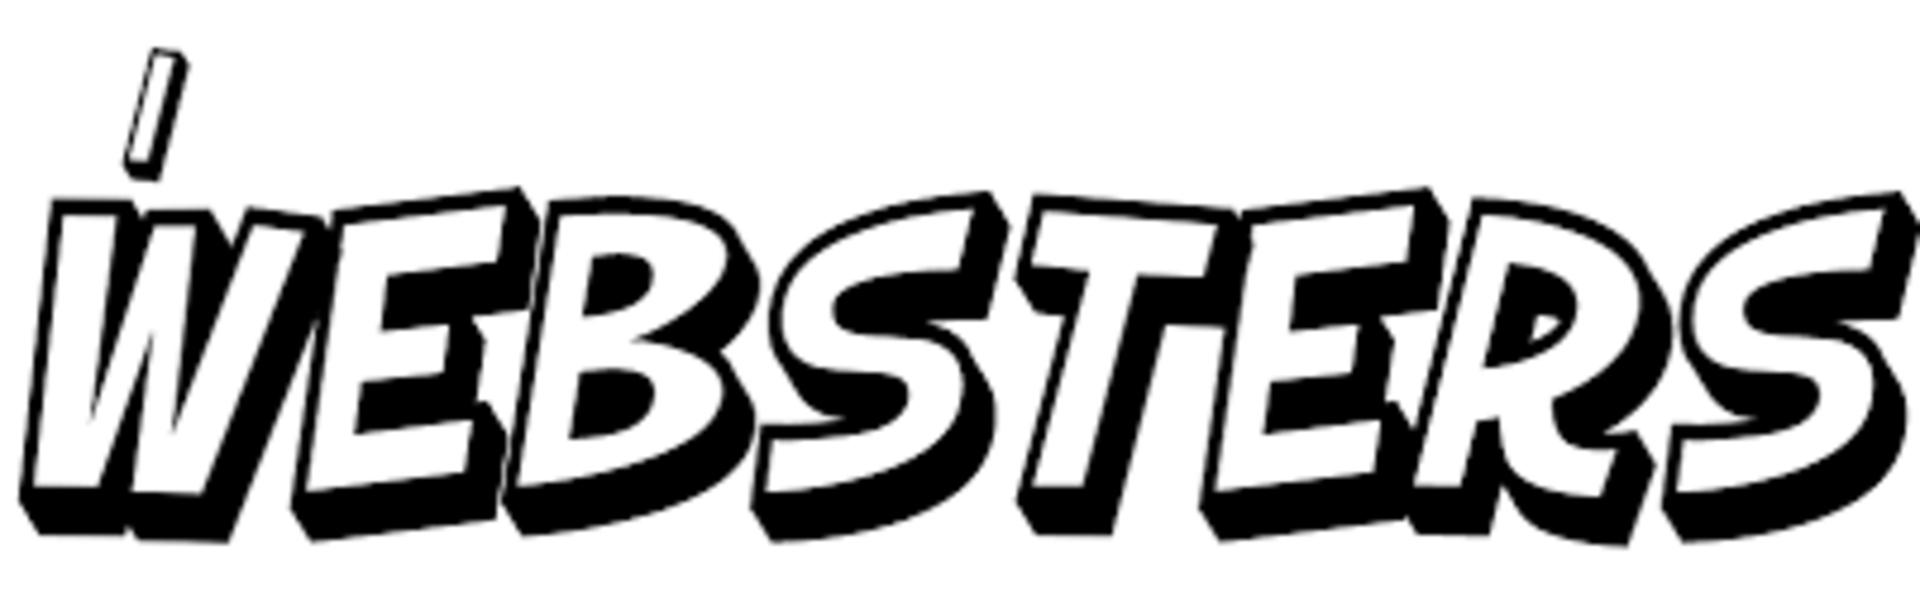 A Websters logó (olasz nyelven)